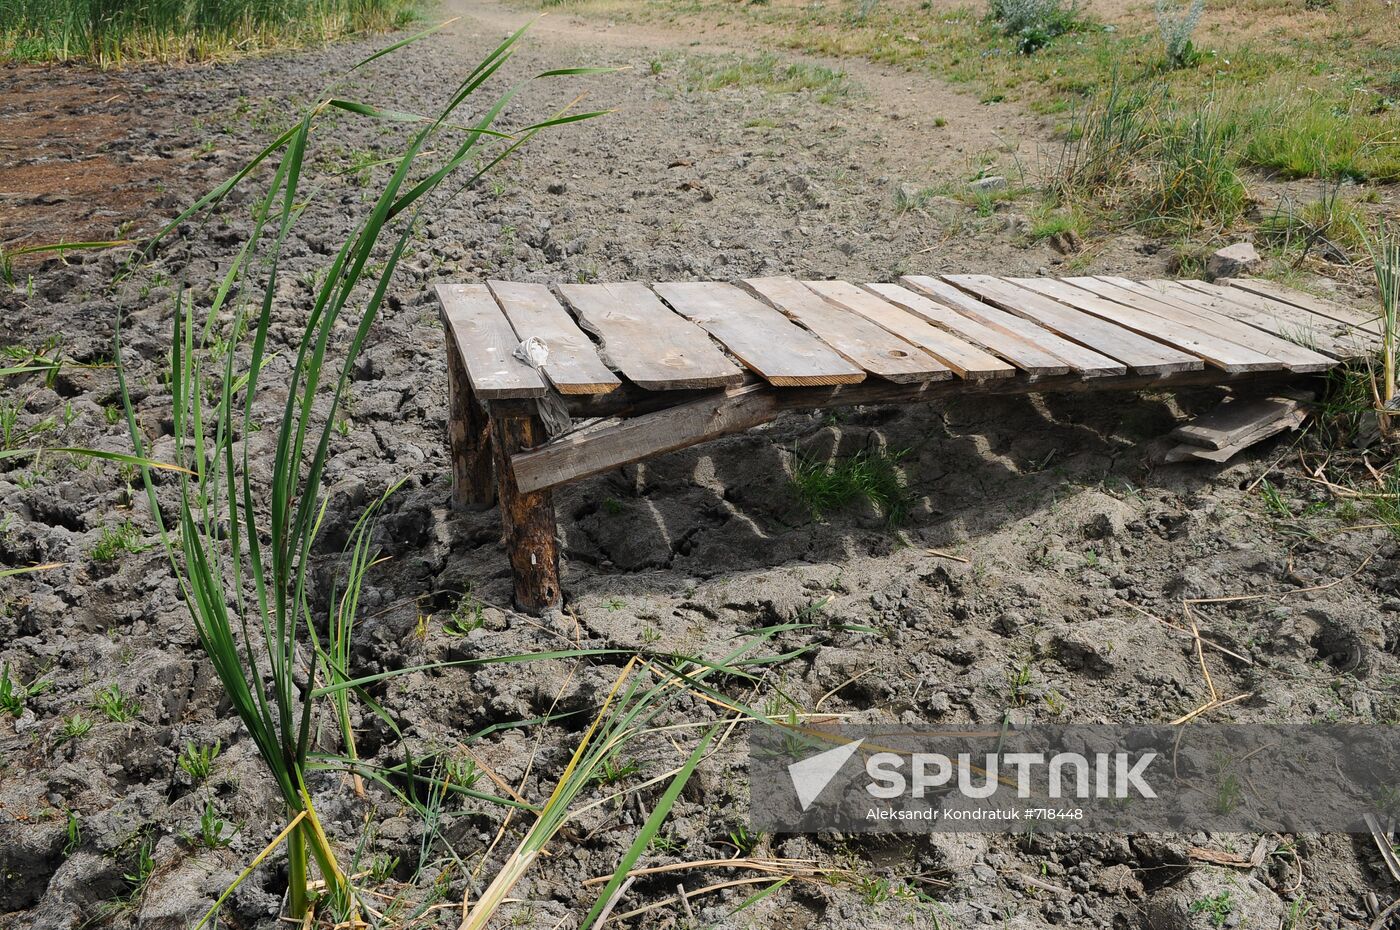 Russia's Chelyabinsk Region hit by drought